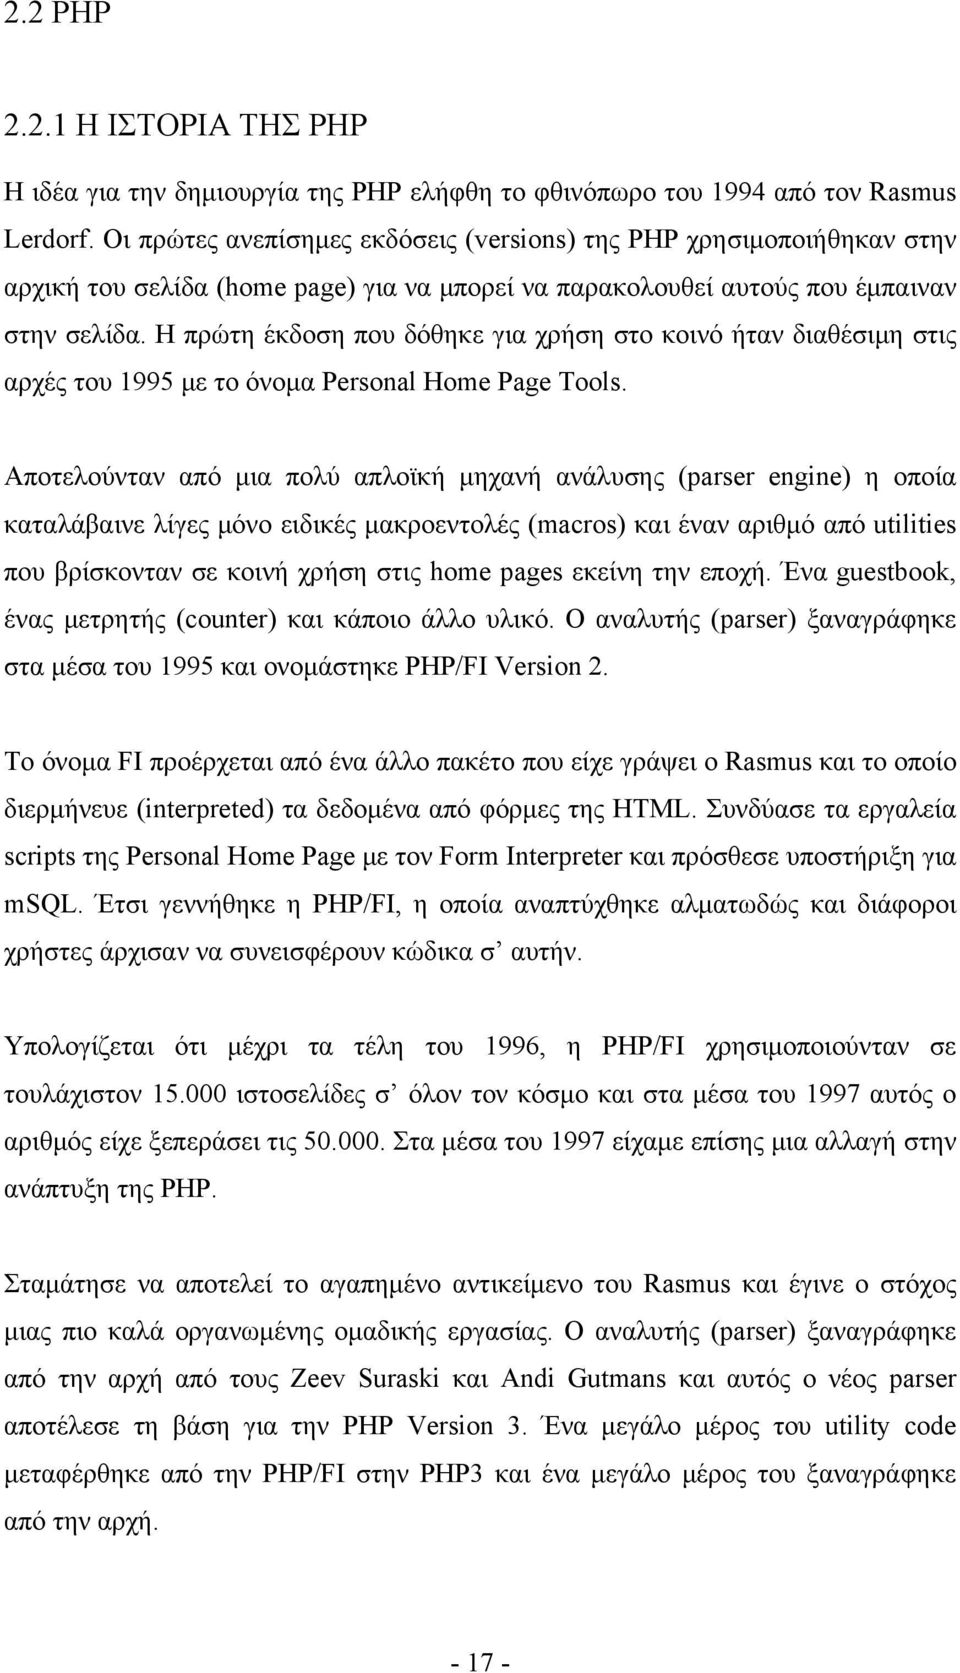 Η πρώτη έκδοση που δόθηκε για χρήση στο κοινό ήταν διαθέσιμη στις αρχές του 1995 με το όνομα Personal Home Page Tools.